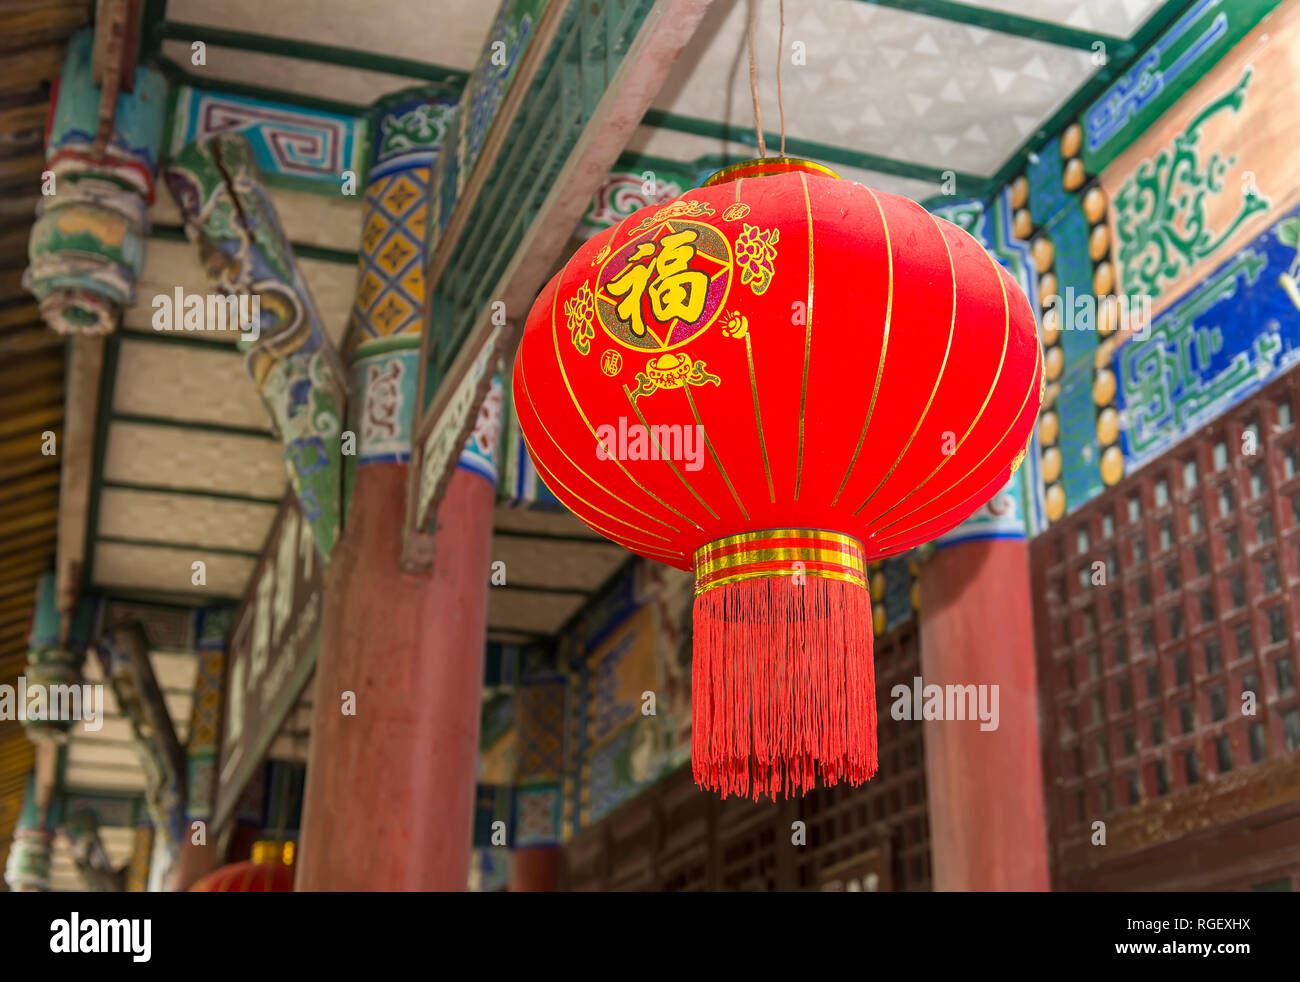 Tradition décoration lanternes de moyenne,Chinois meilleurs vœux et bonne chance pour le prochain nouvel an chinois Banque D'Images